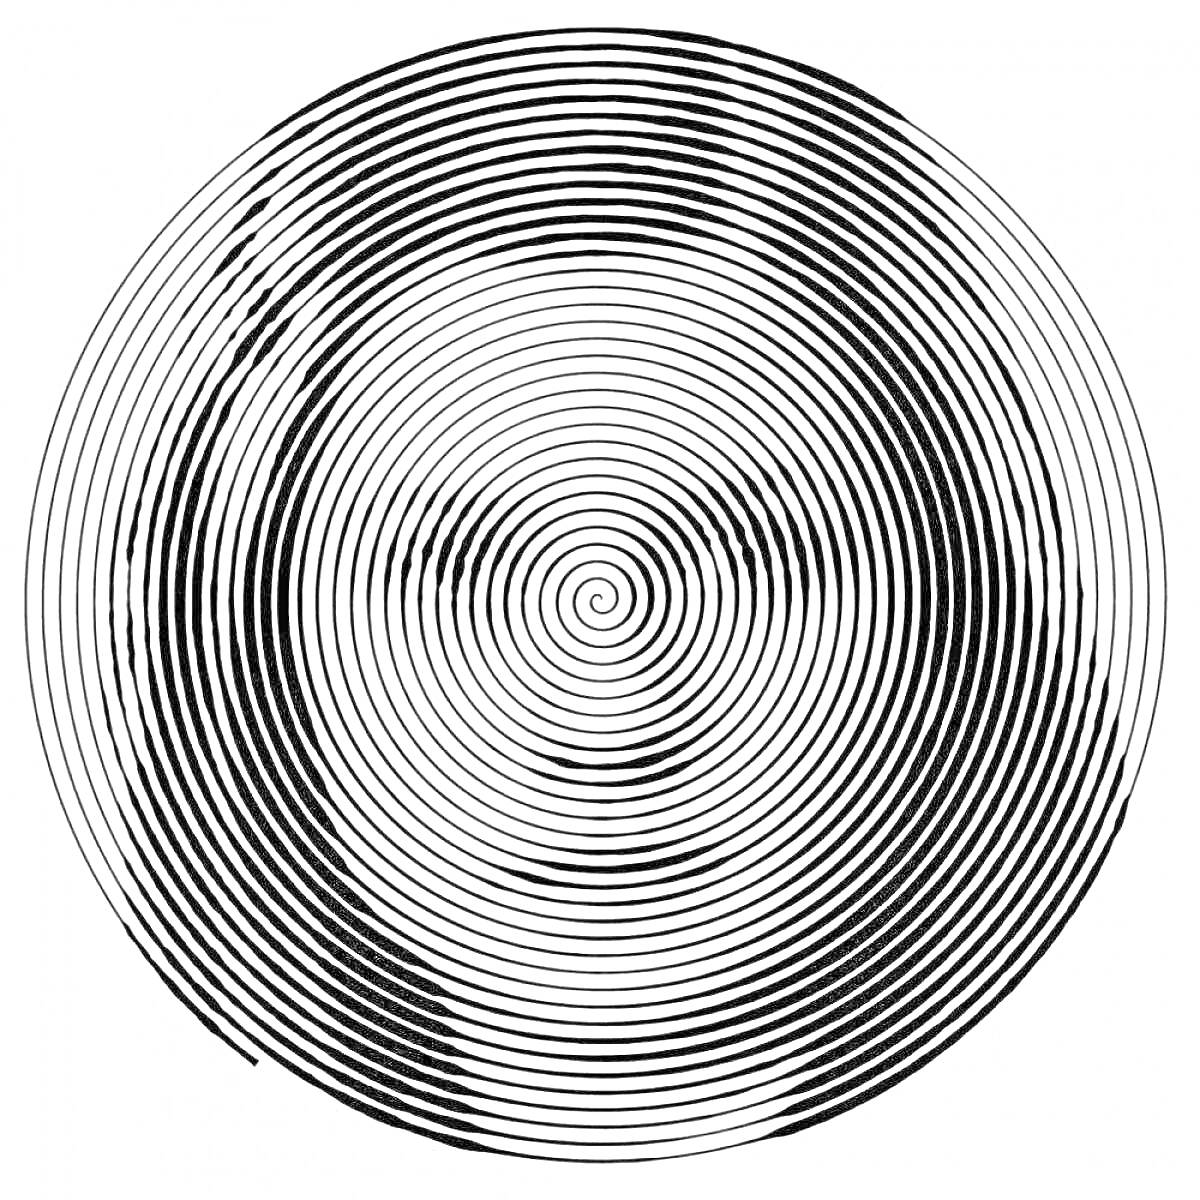 Спиральный узор с изображением лица внутри кругов